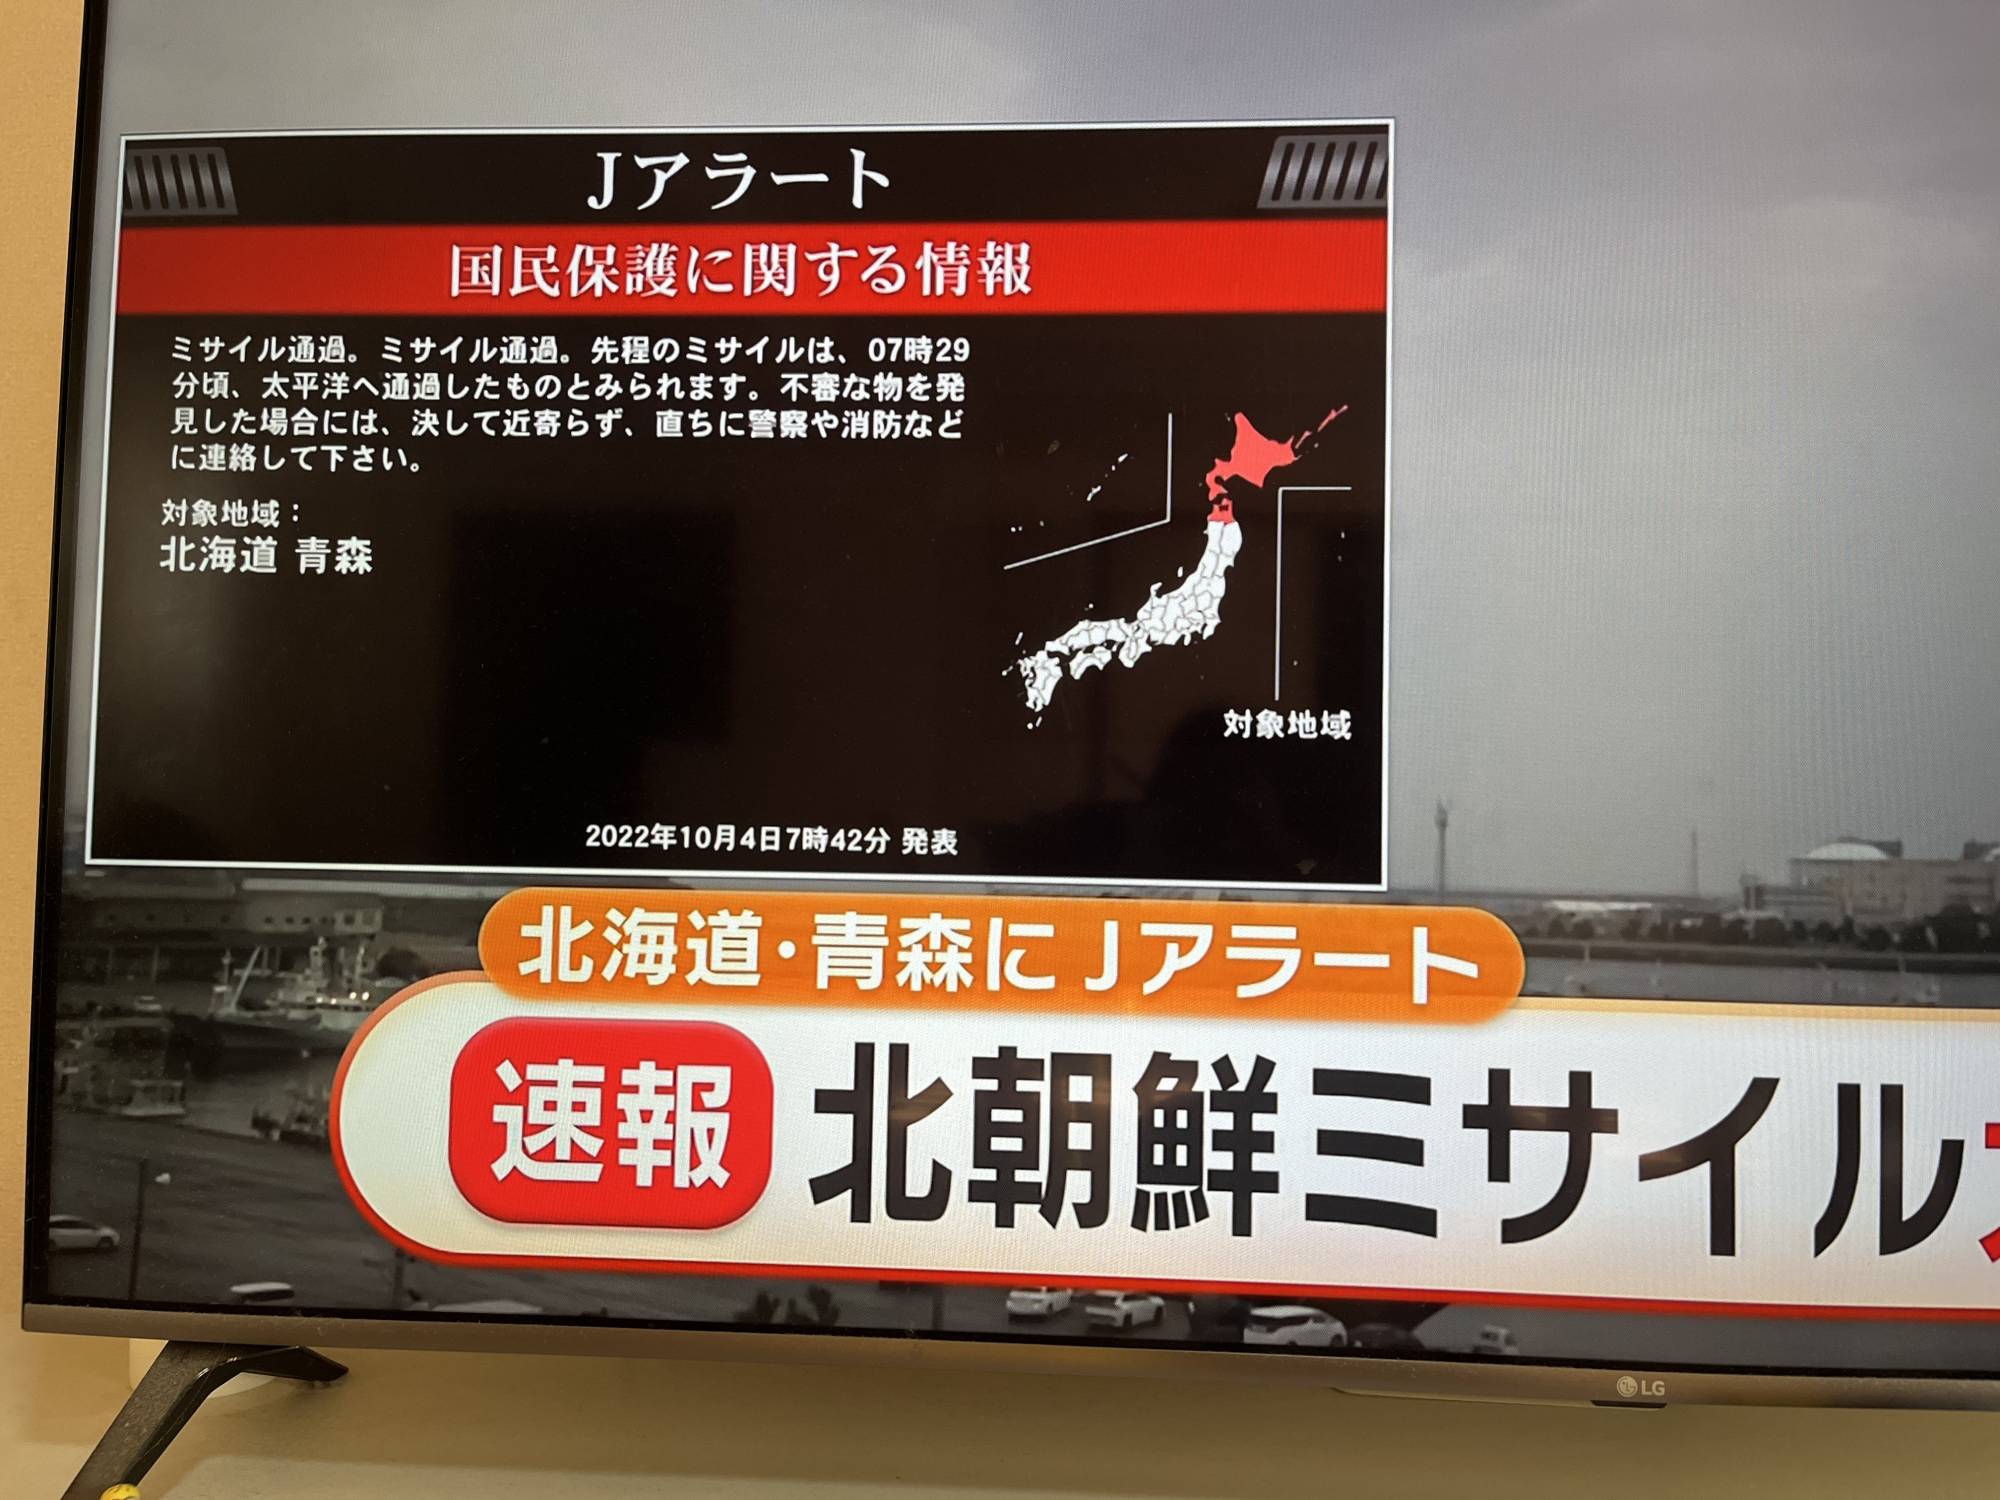 КНДР запустила баллистическую ракету над Японией: в стране объявляли воздушную тревогу (видео) - 2 - изображение